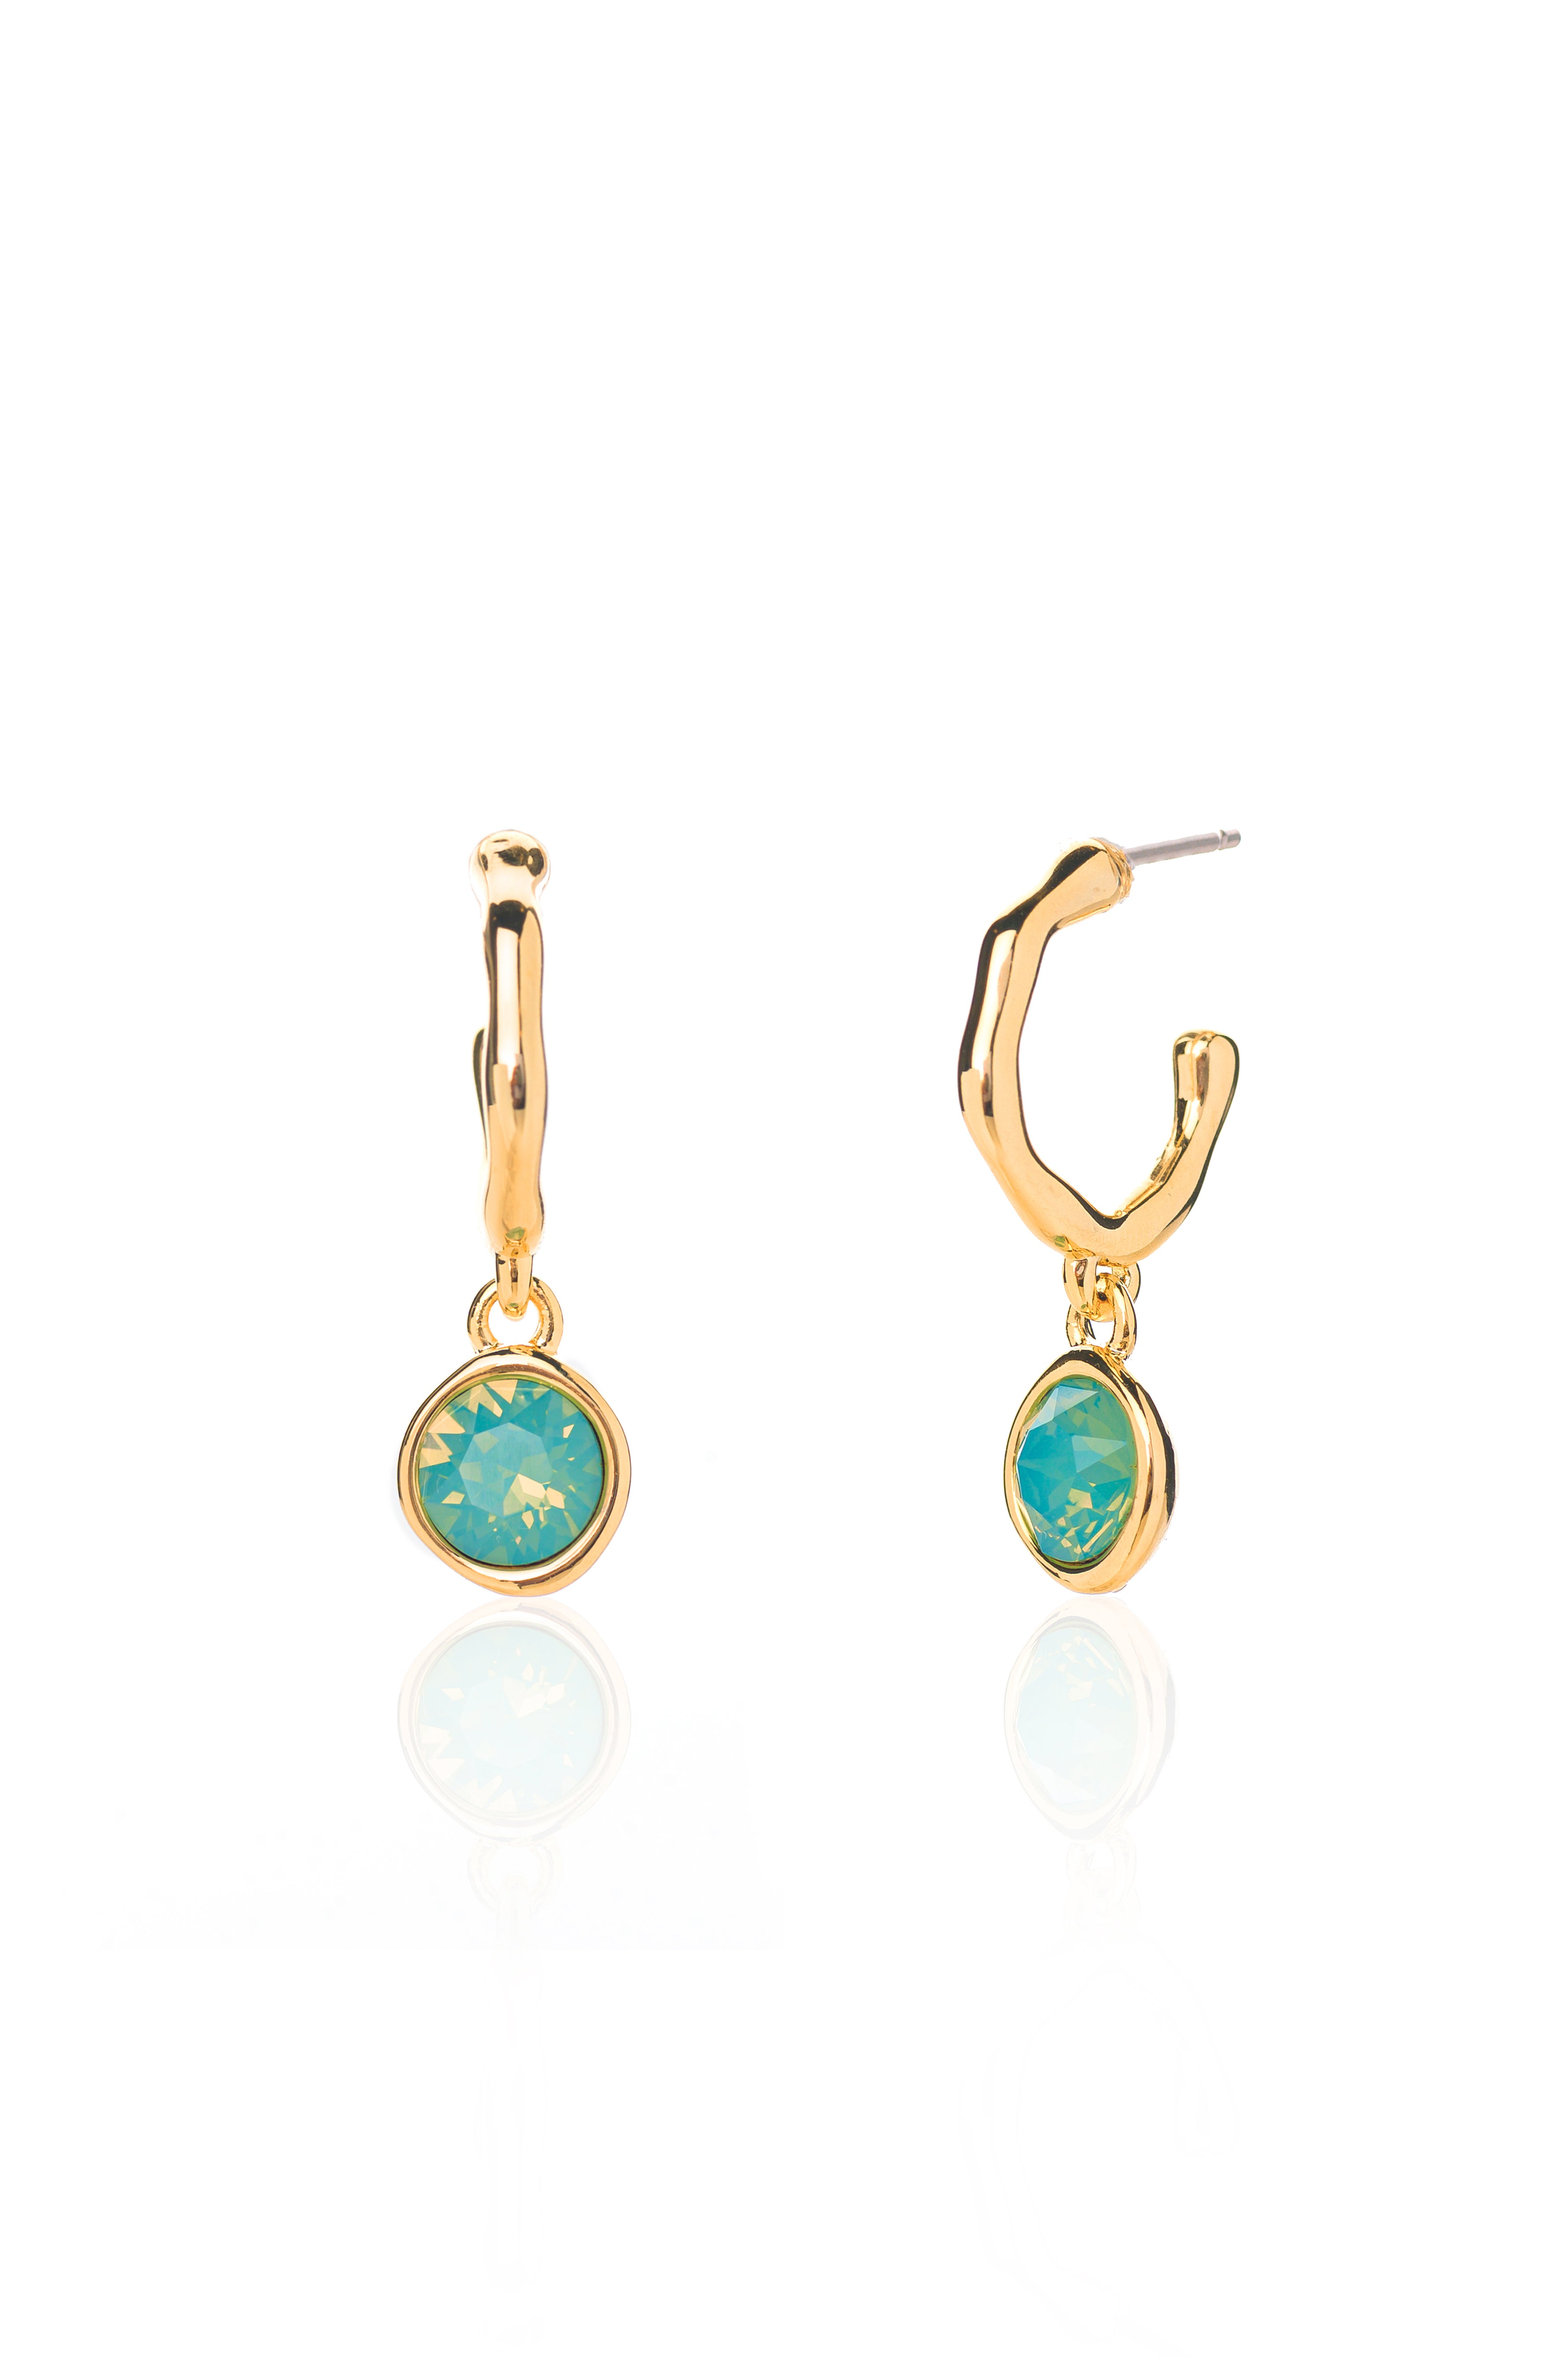 Twiggy Hoop Earrings in Gold - Pacific Opal